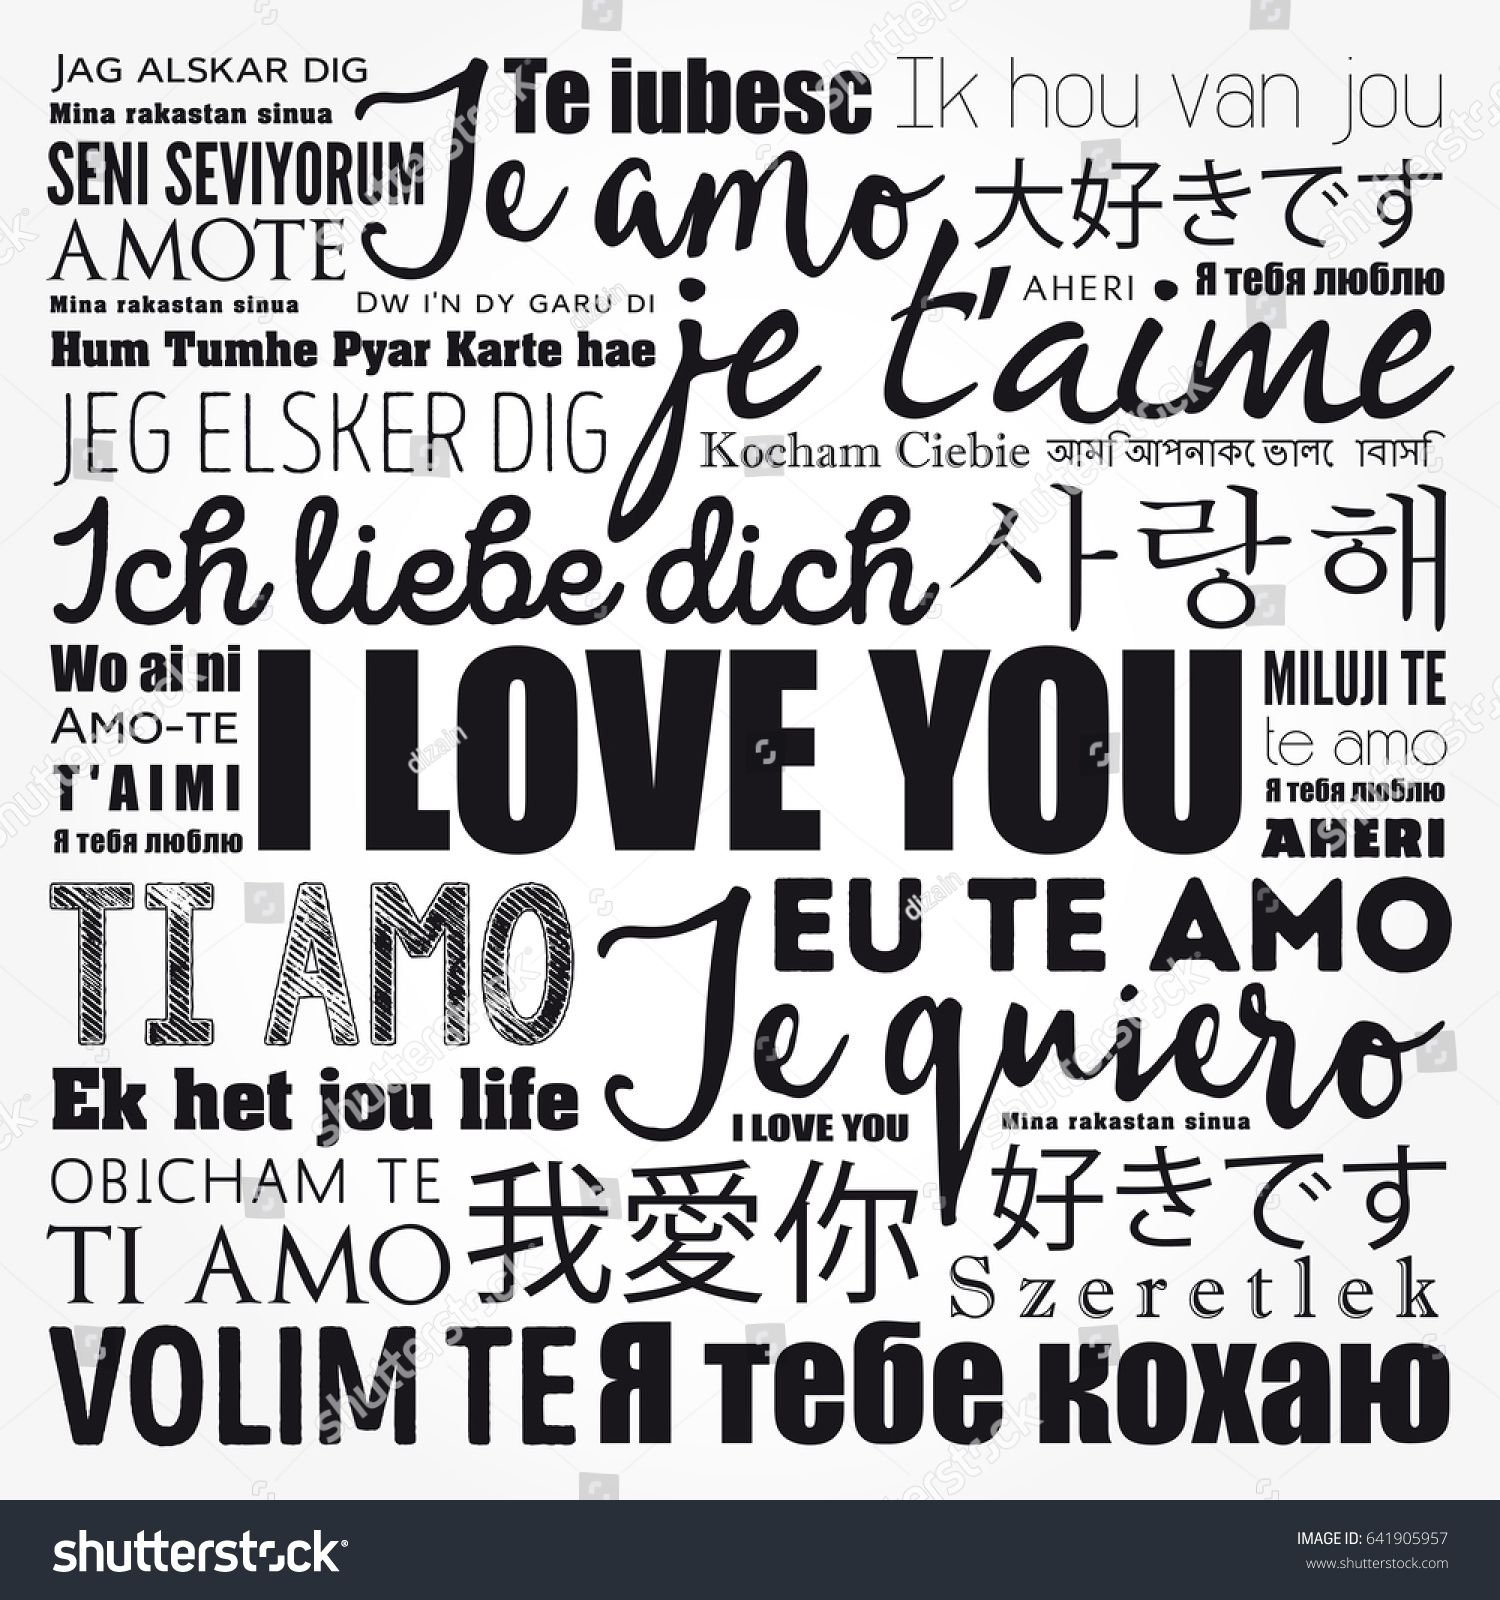 Я люблю тебя на всех языках текст. Надписи я тебя люблю на разных языках. Слово я тебя люблю на разных языках. Надпись любовь на разных языках.